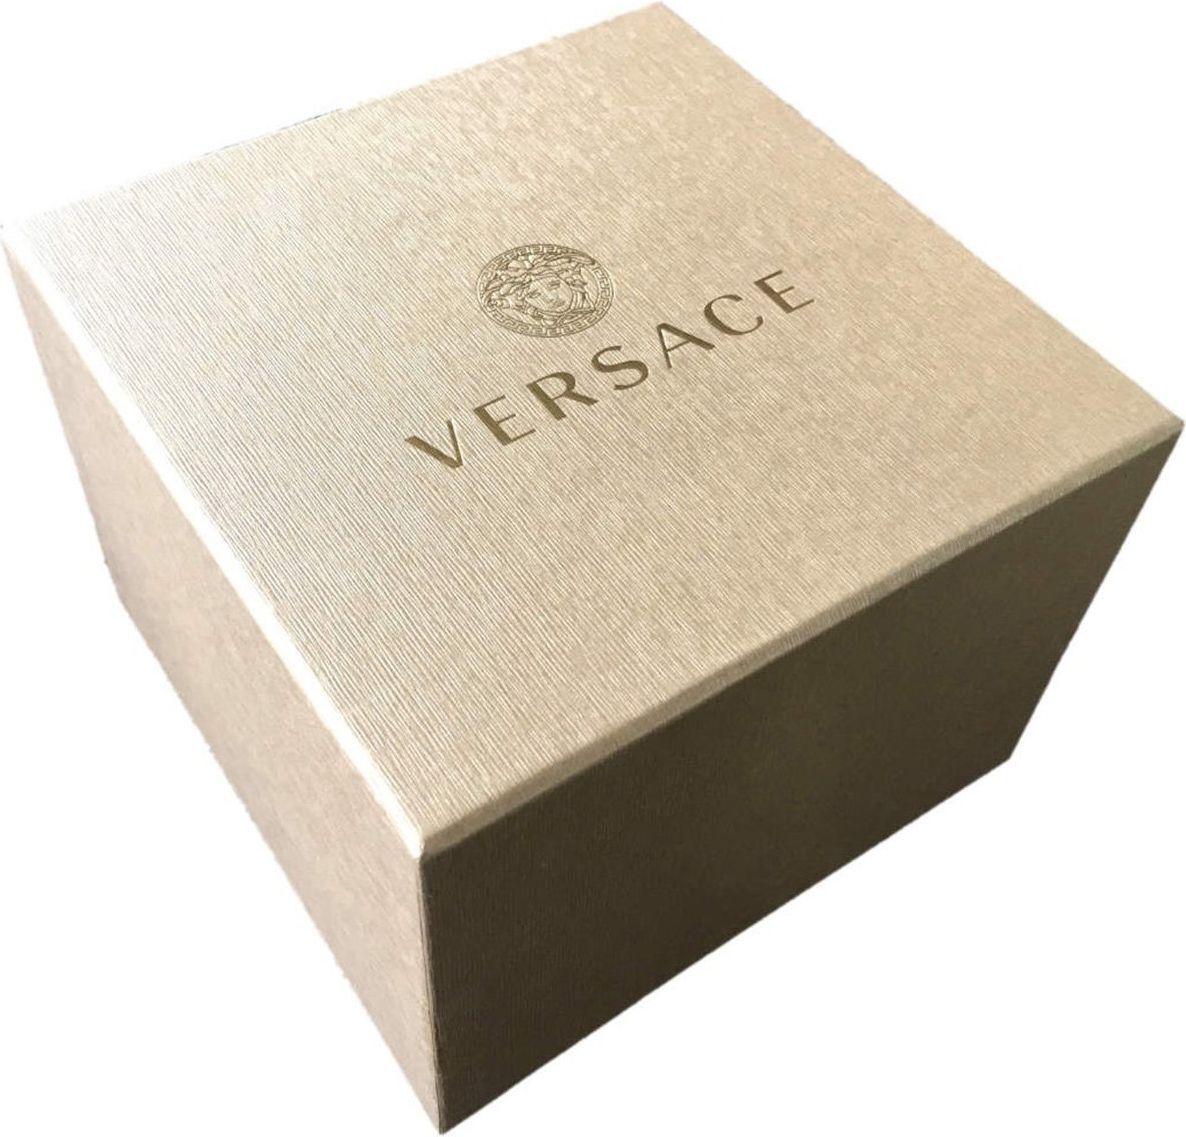 Versace VEPX01321 Greca dames horloge 38 mm Zwart